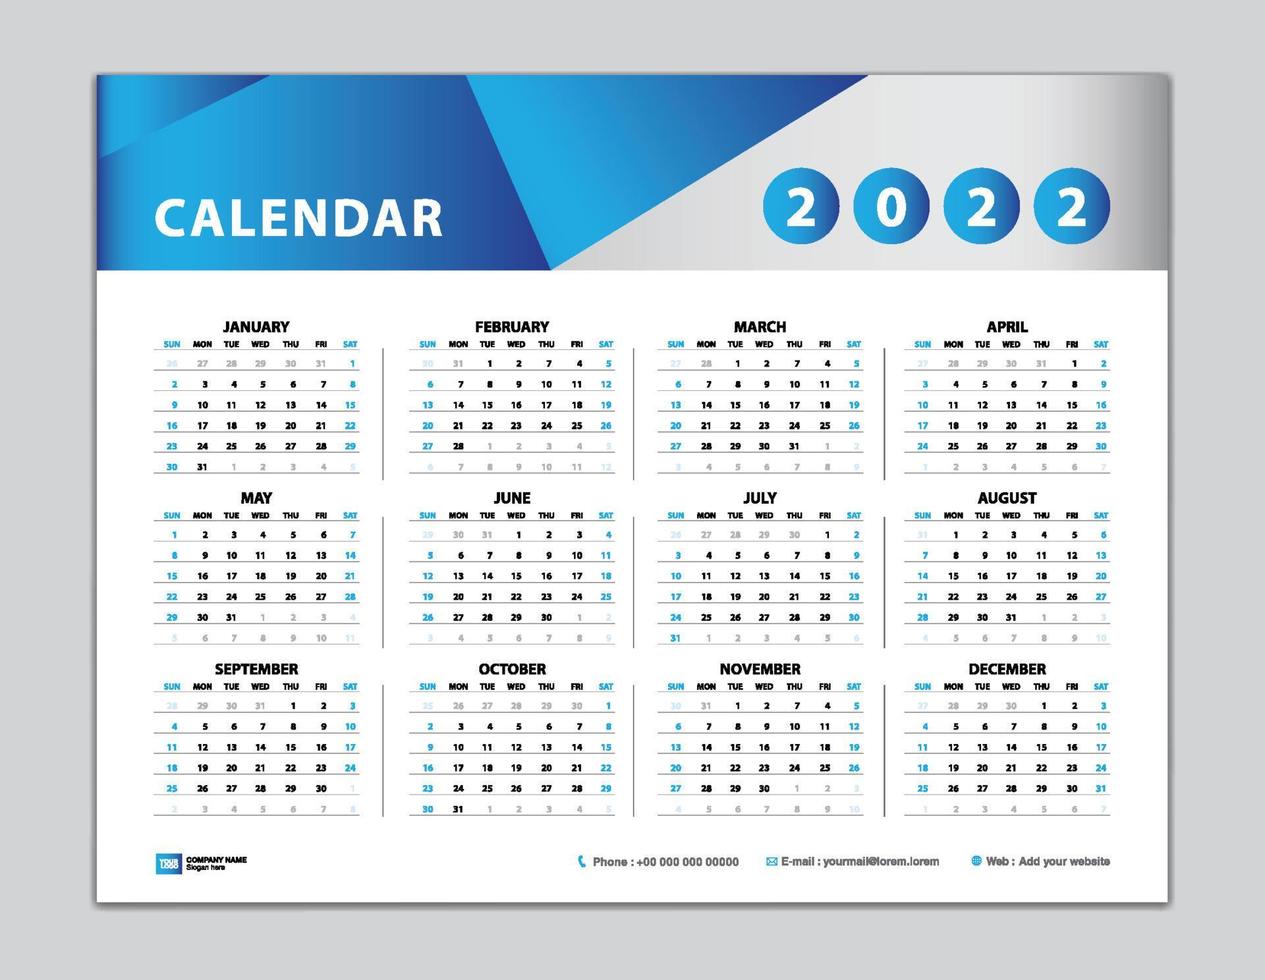 Kalender 2022 Vorlage, Tischkalender 2022 Design, Wandkalender 2022 Jahr, Satz von 12 Monaten, Woche beginnt am Sonntag, Planer, Jahresorganisator, Schreibwaren, Kalenderinspiration, blauer Hintergrundvektor vektor